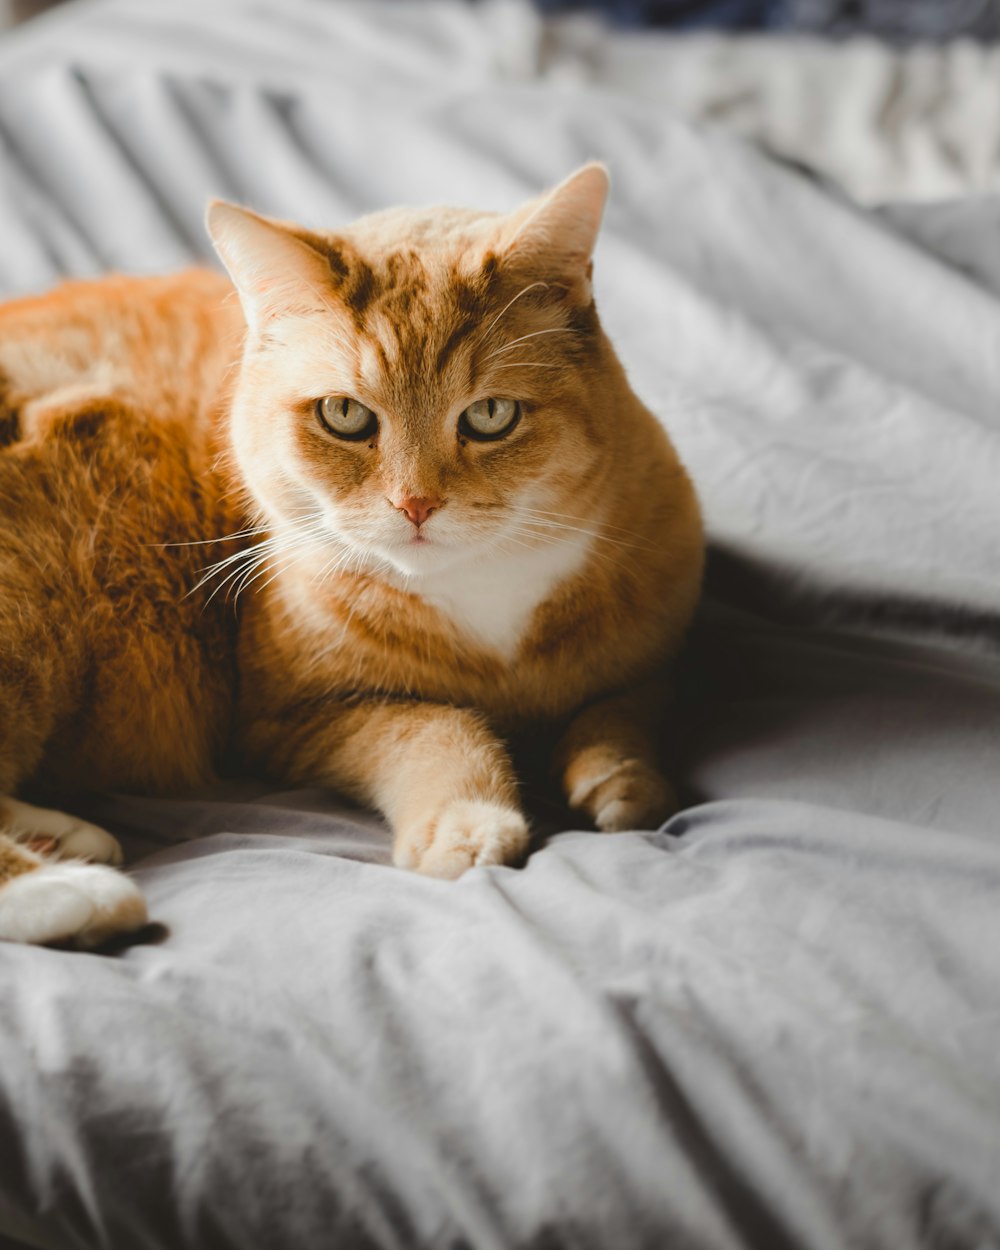 Enfoque selectivo del gato atigrado naranja